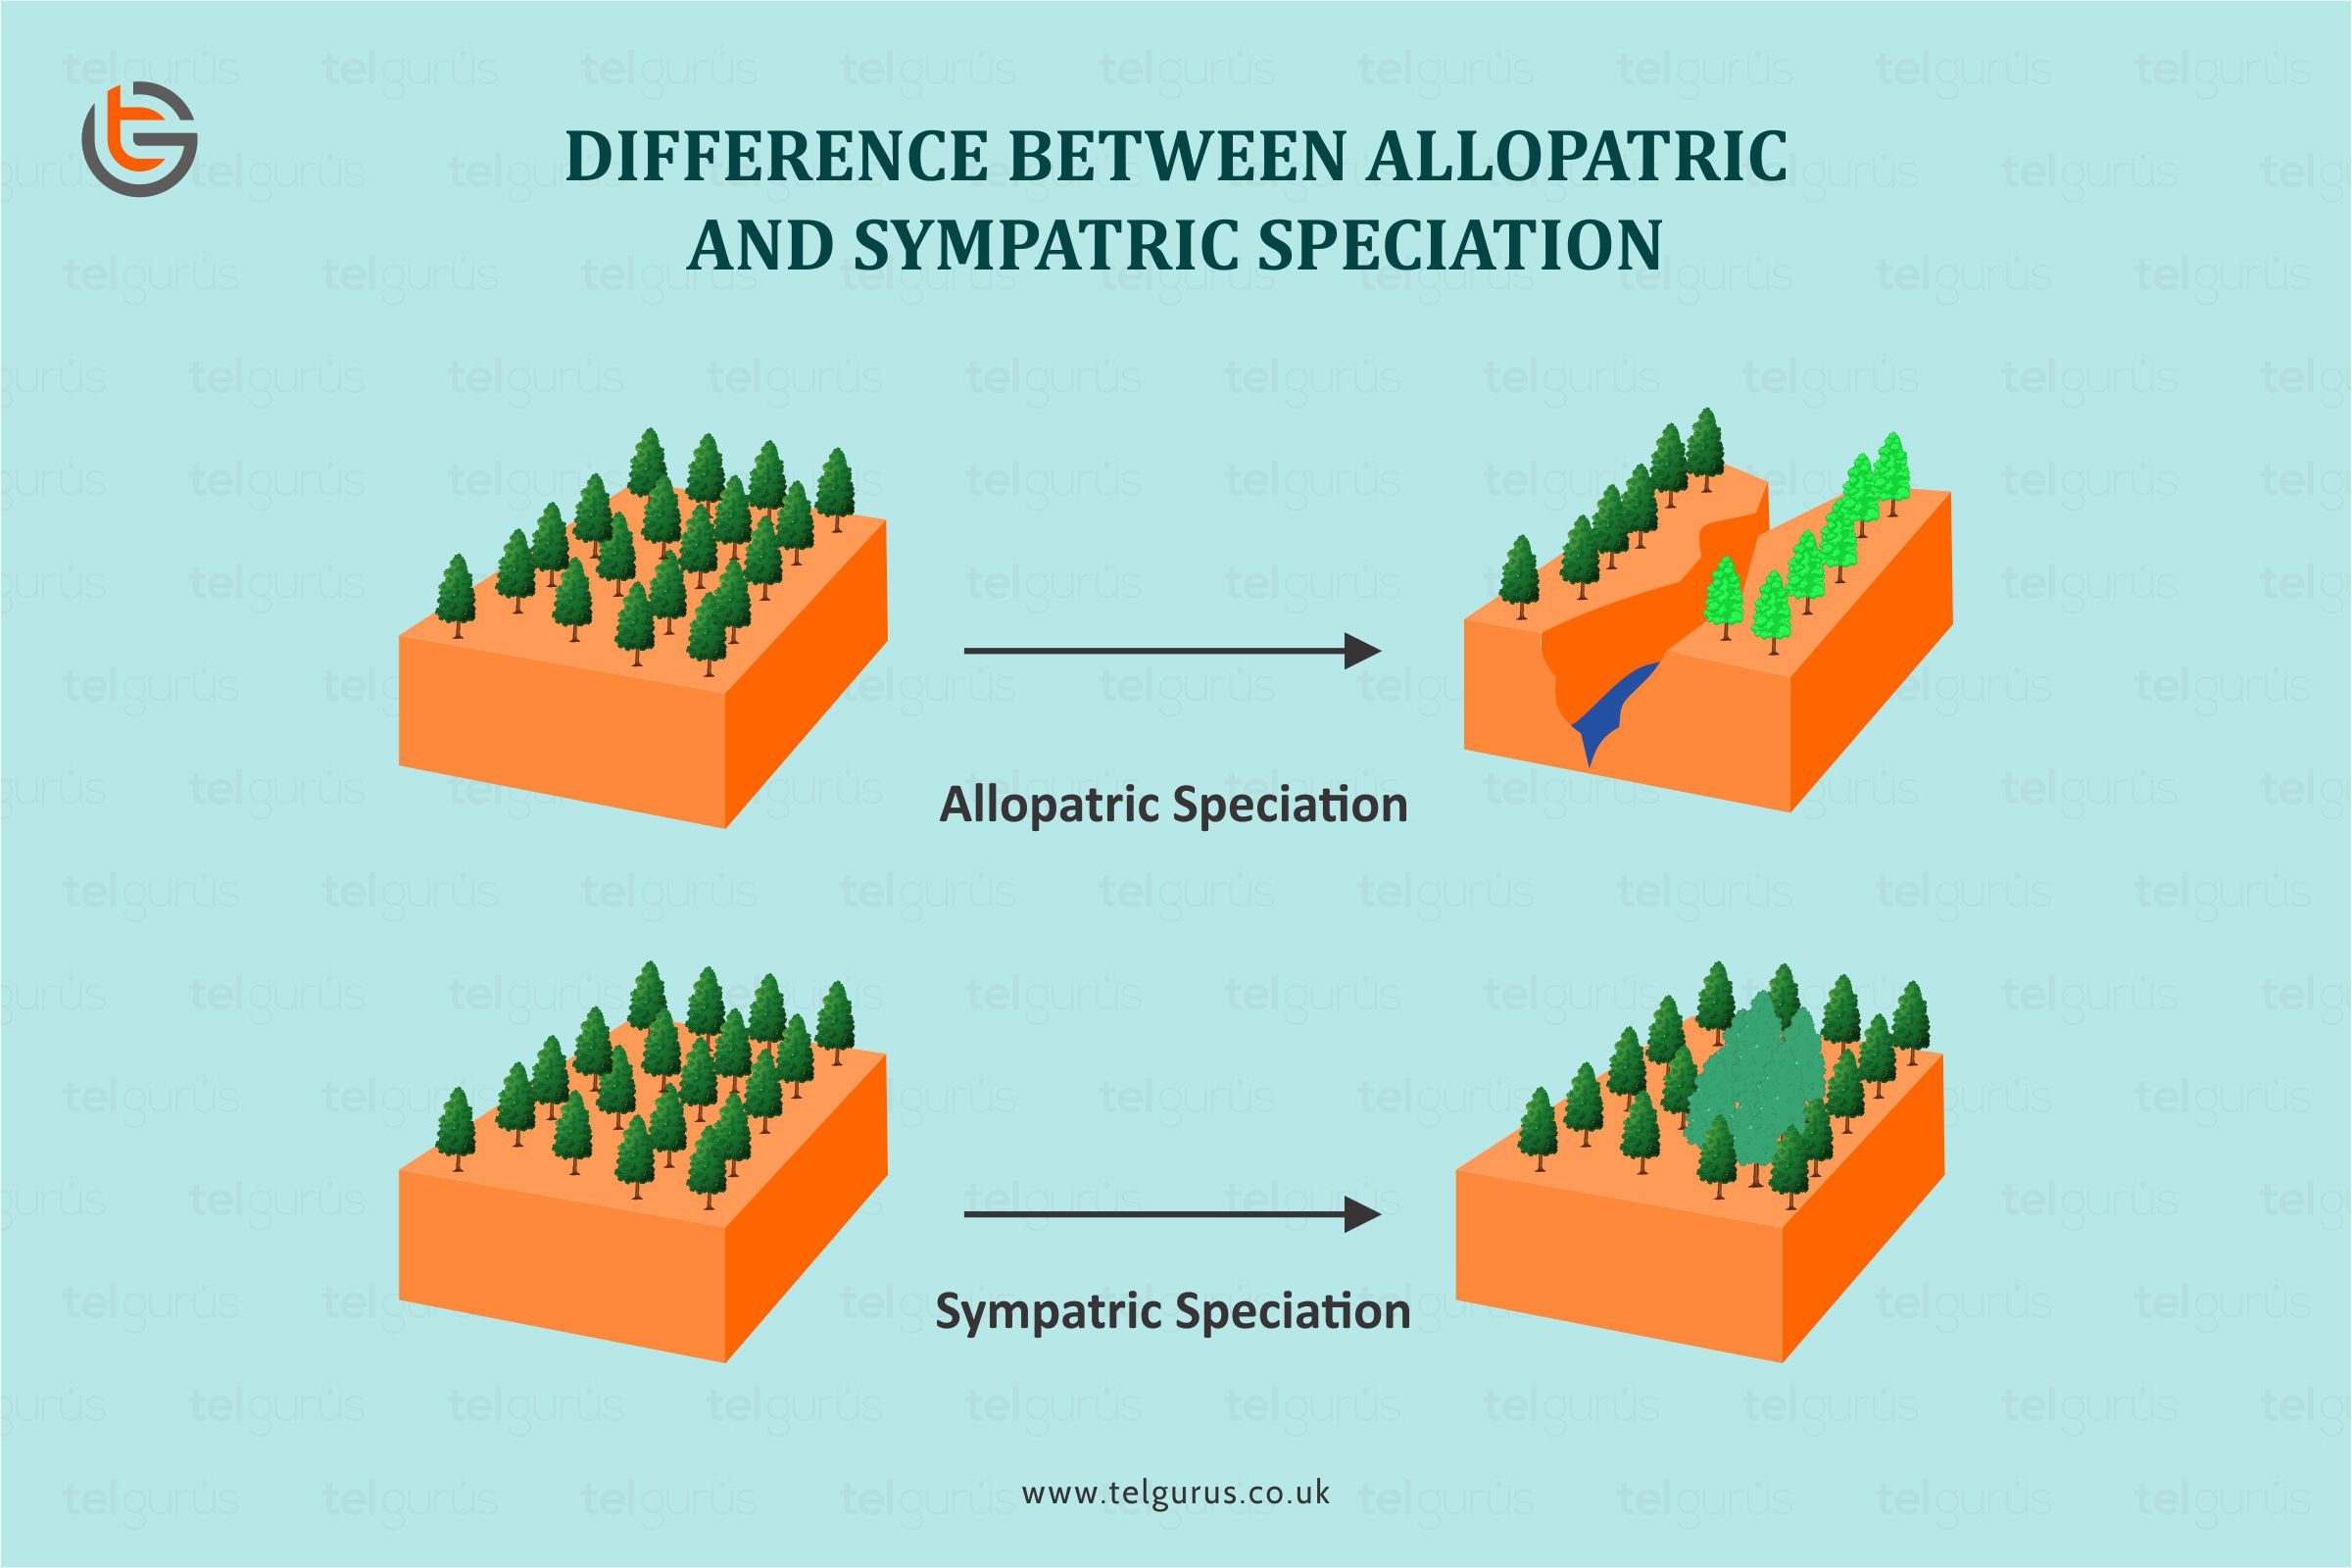 Allopatric-Sympatric